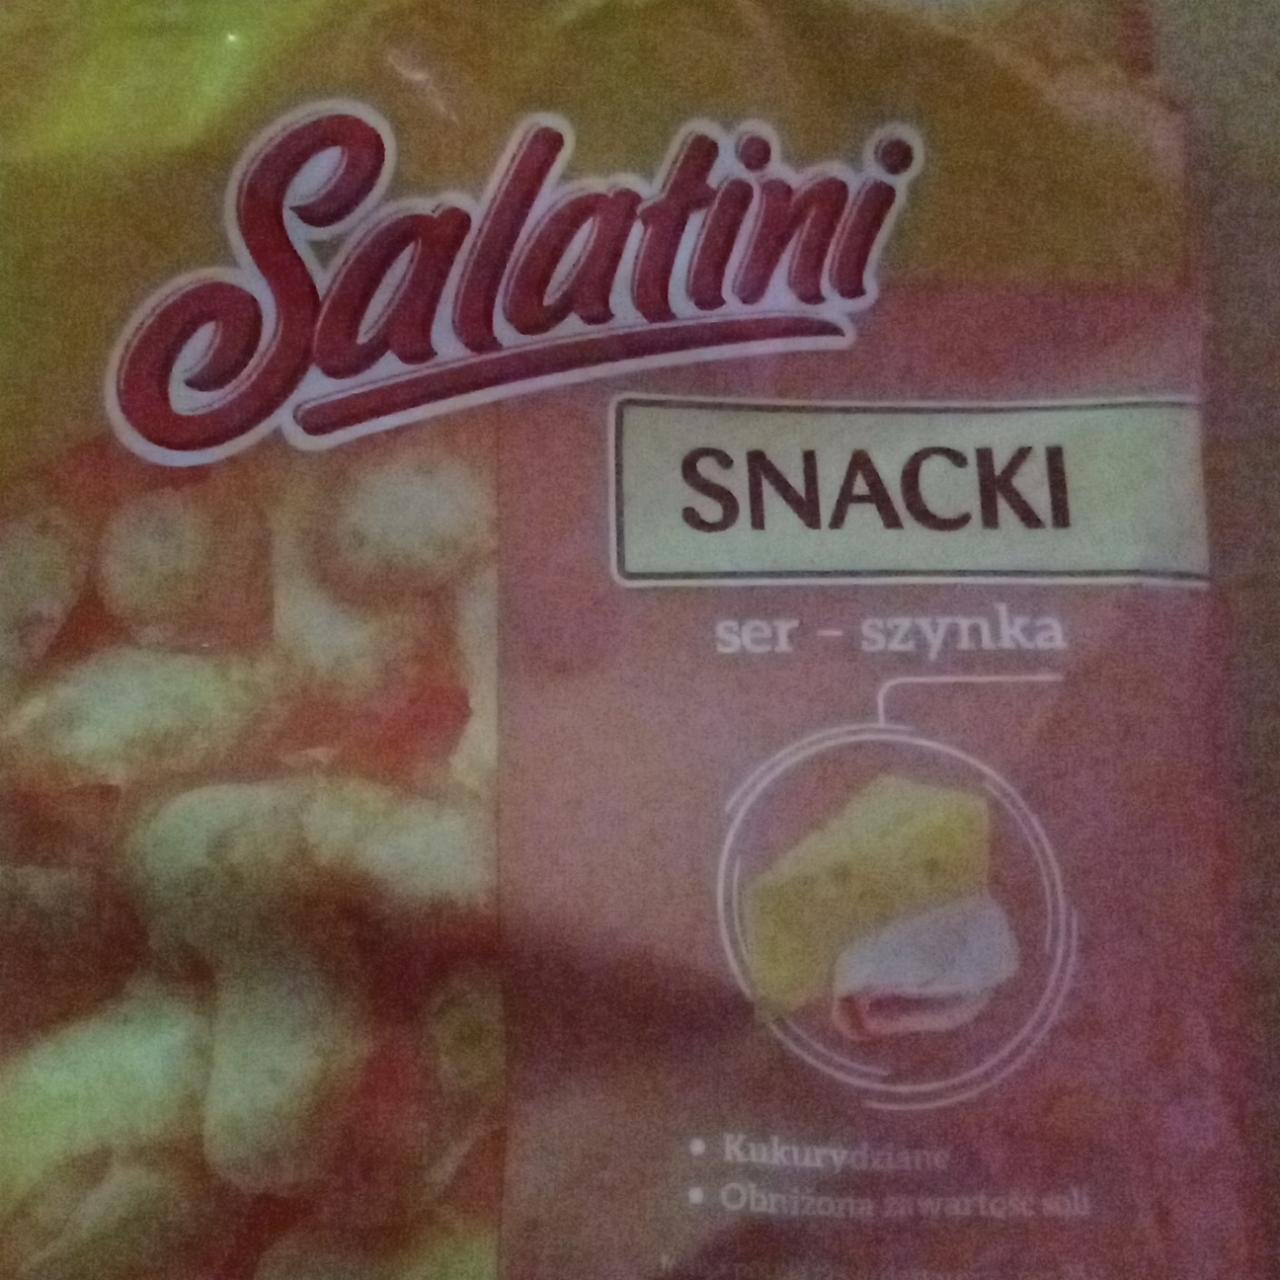 Zdjęcia - chrupki kukurydziane smak ser szynka Salatini